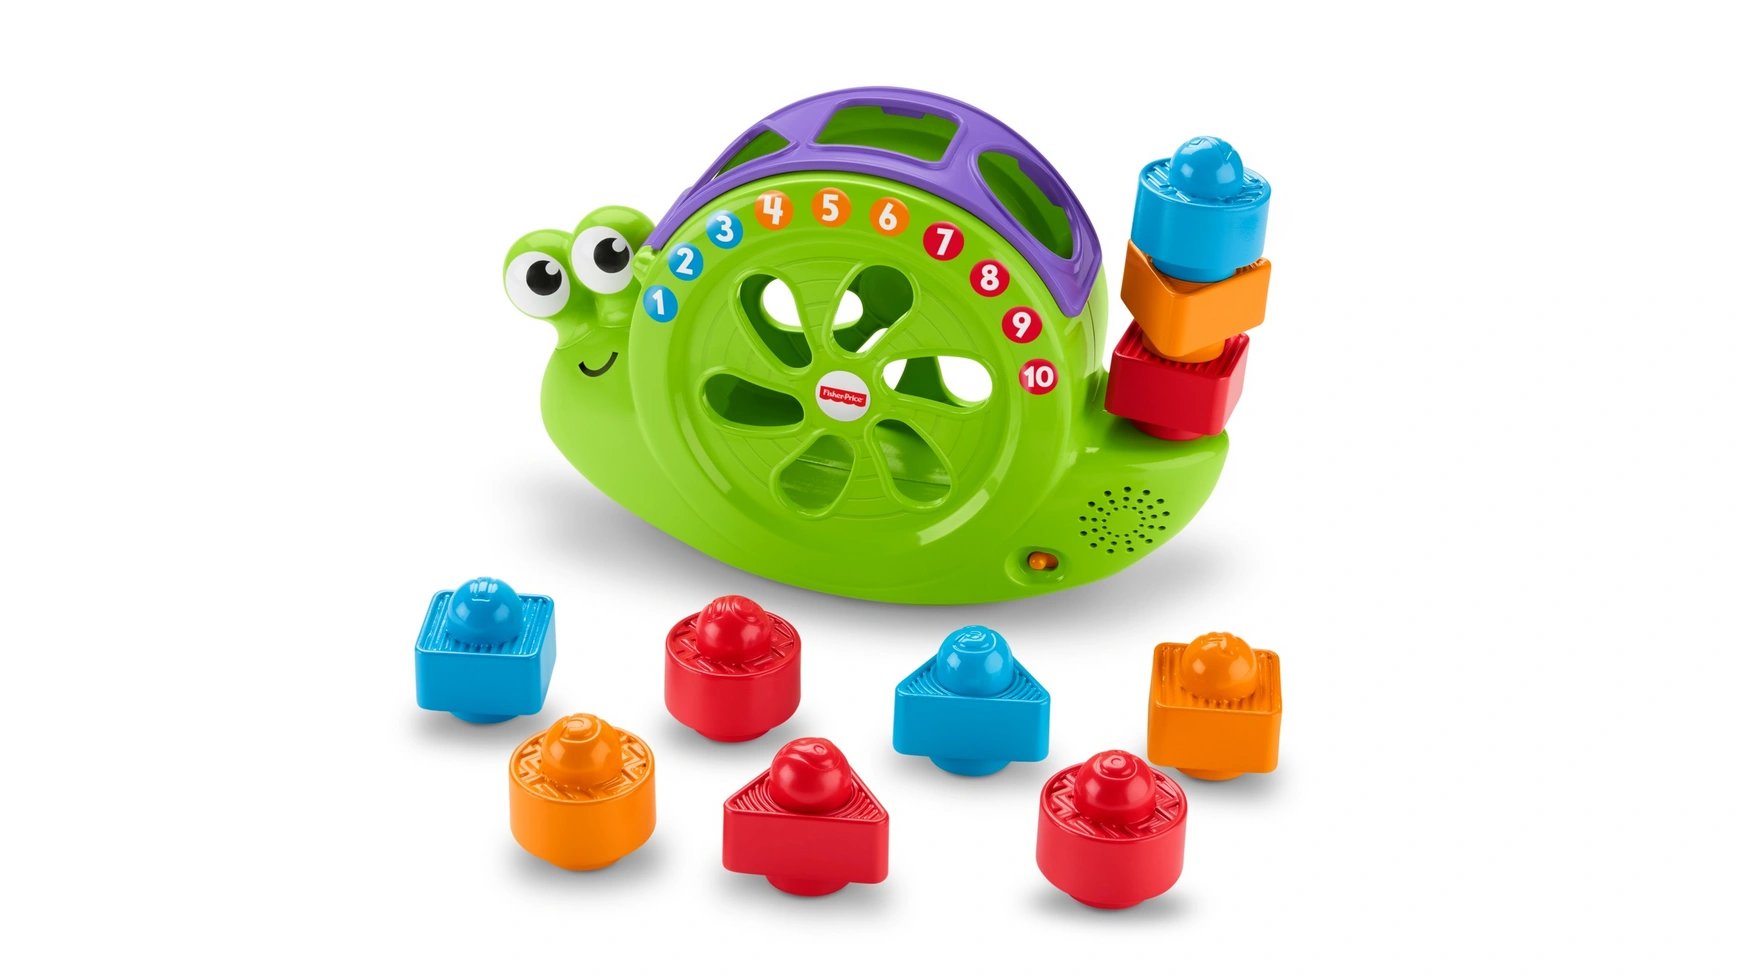 Музыкальная улитка Fisher Price Babies, подключаемая игрушка, складывающаяся игра, развивающая игрушка обучающая игрушка fisher price обучающий осьминог